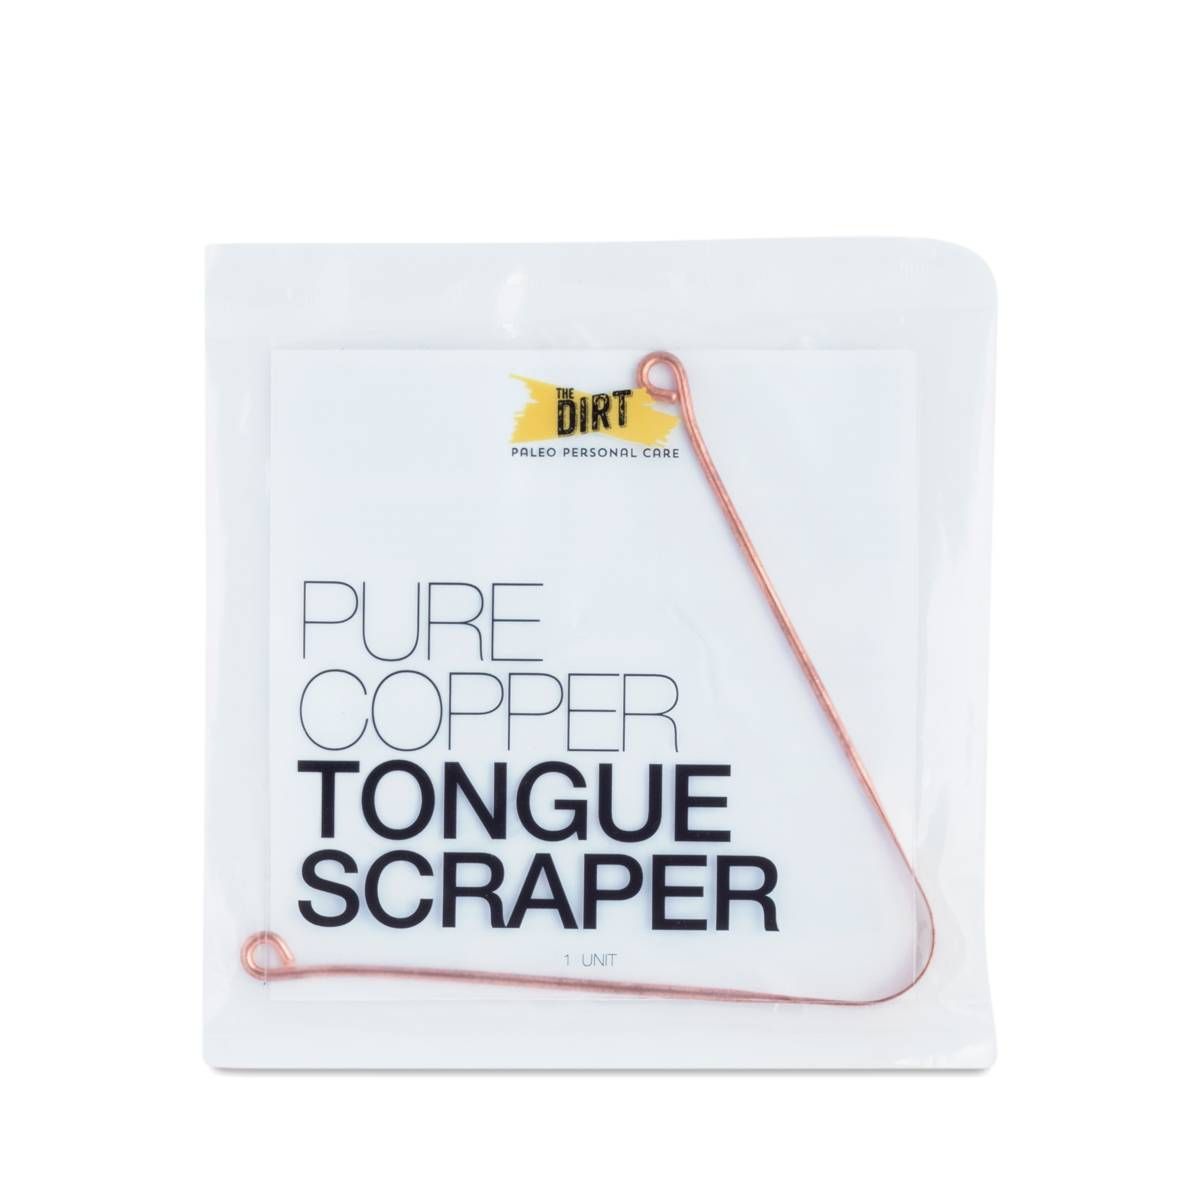 The Dirt Copper Tongue Scraper